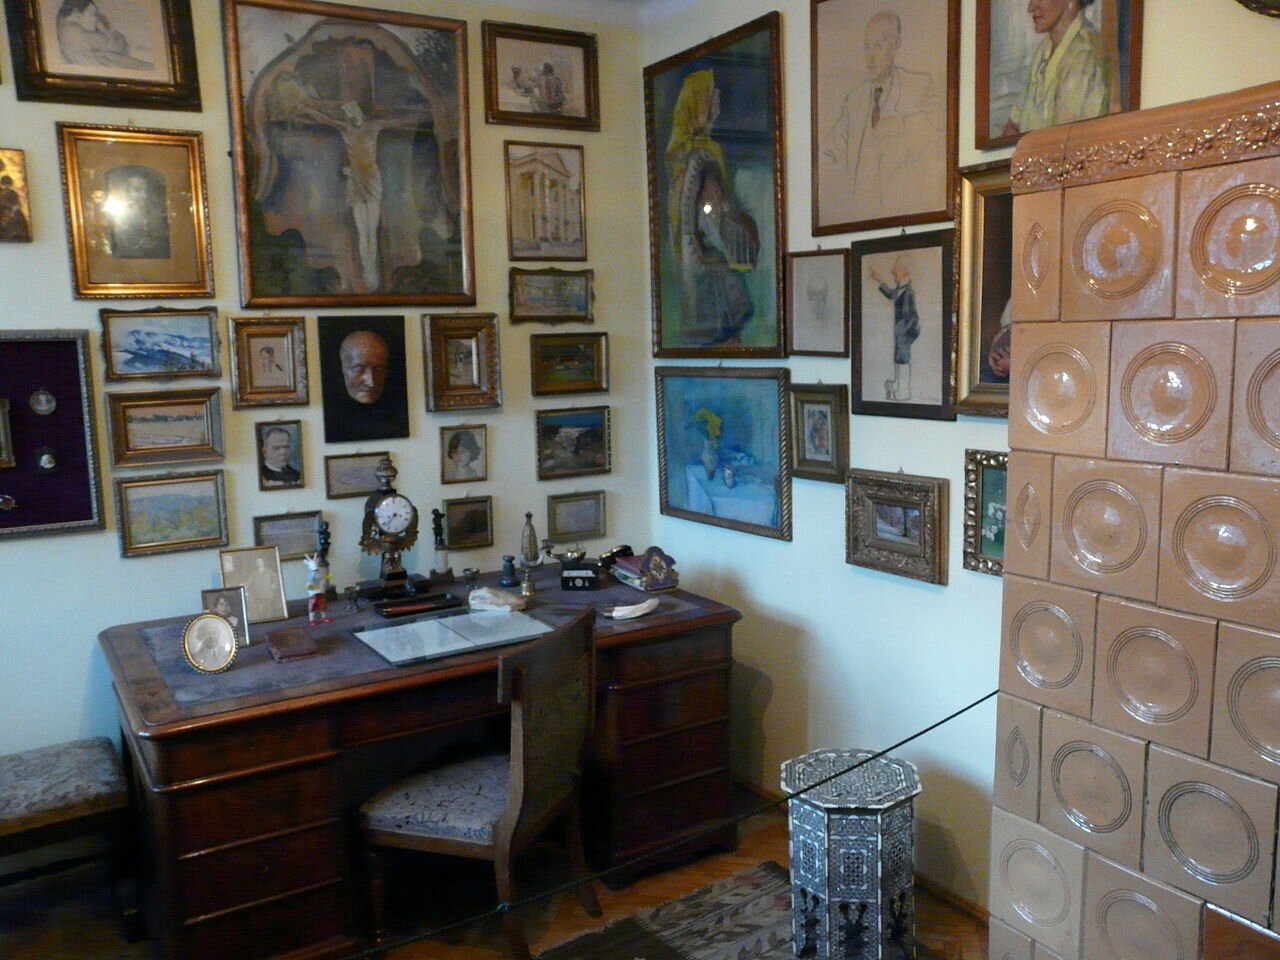 Zdjęcie przedstawia wnętrze pokoju. Znajduje się w nim biurko z krzesłem, duży piec kaflowy i wiele obrazów na ścianach.